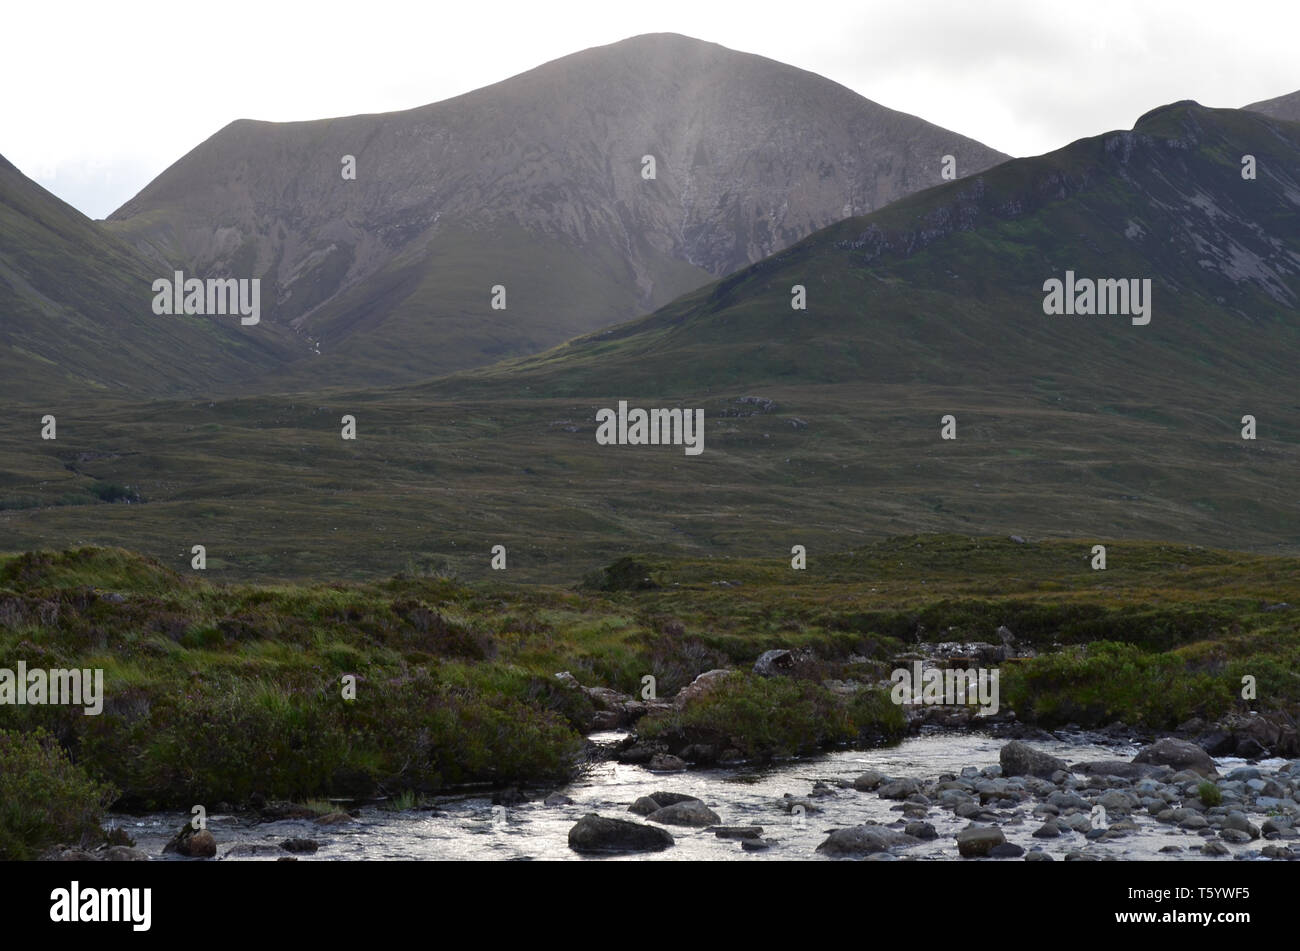 Moorlands, boglands, peatlands, glens and hills in the isle of Skye, Scotland Stock Photo